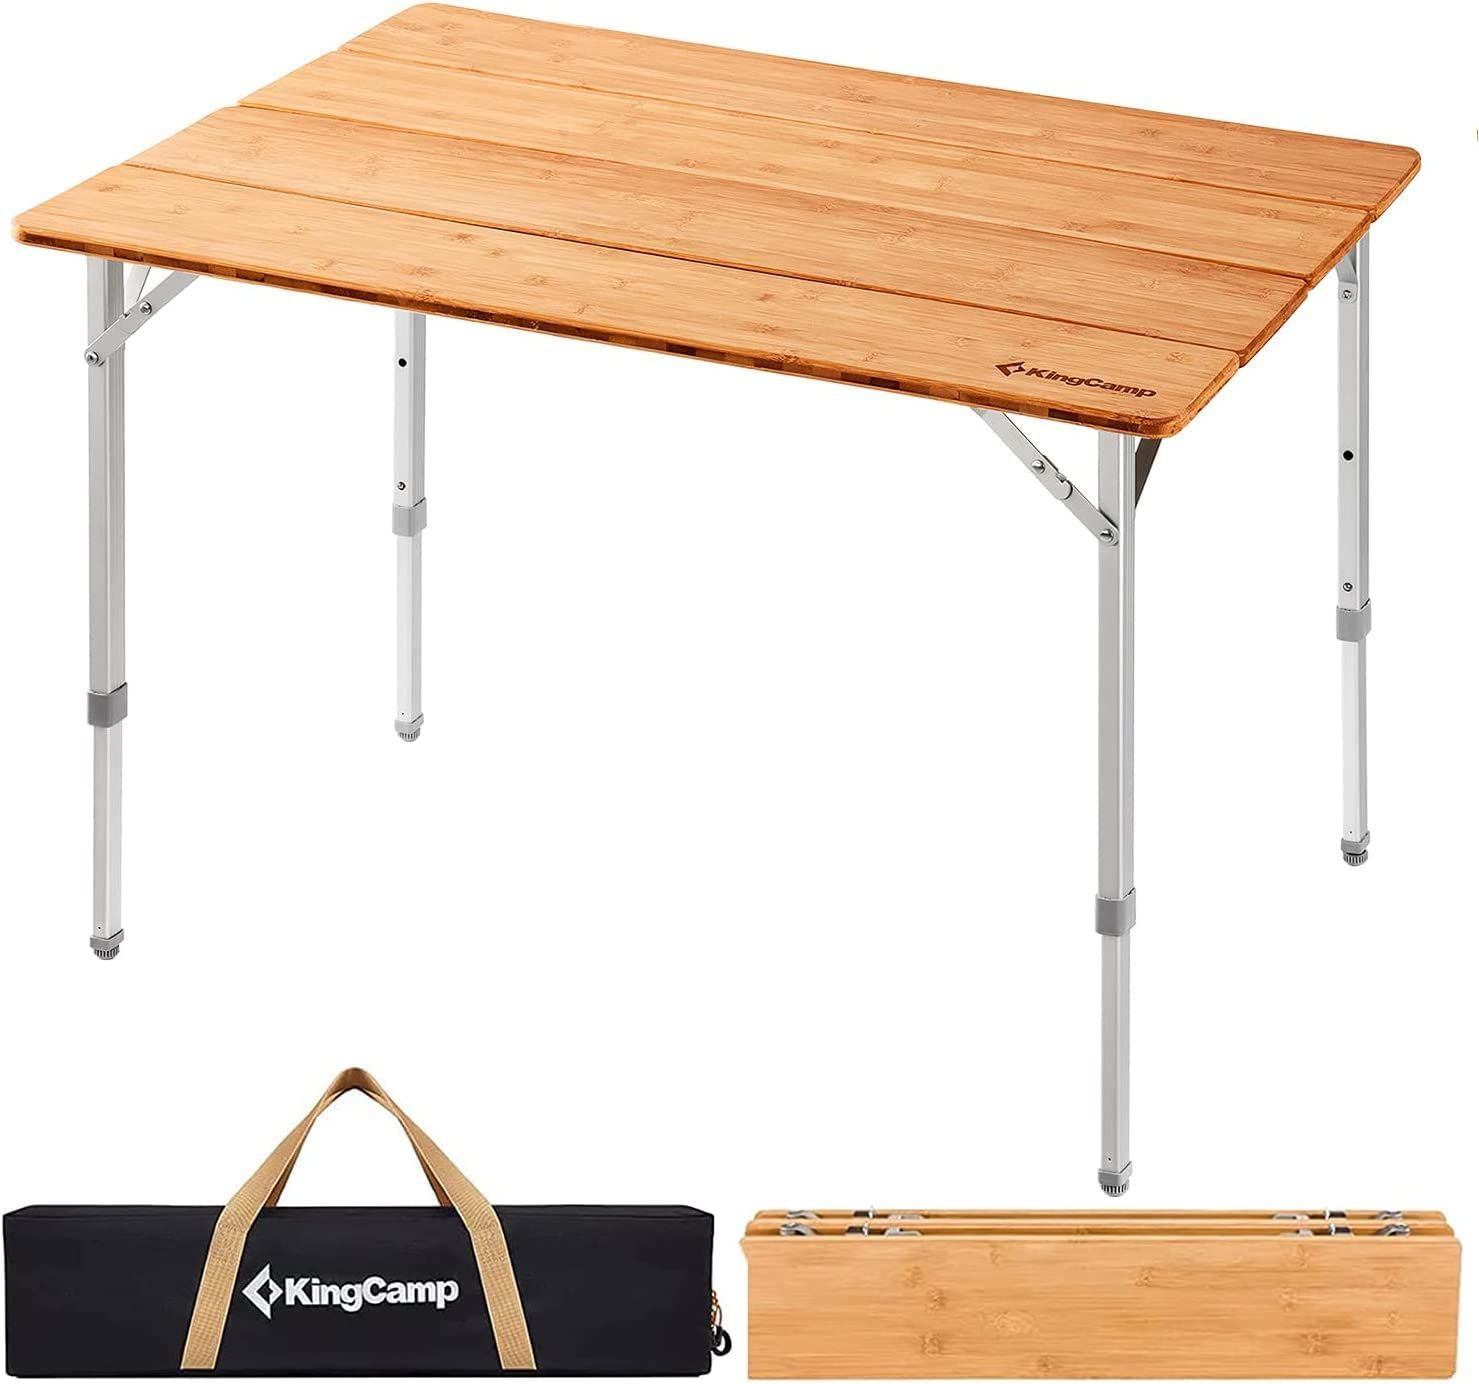 KingCamp キャンプ テーブル 折りたたみ バンブーテーブル アウトドア 100*65cm 3段階高さ調整可能 コンパクト 4折 ロールテーブル